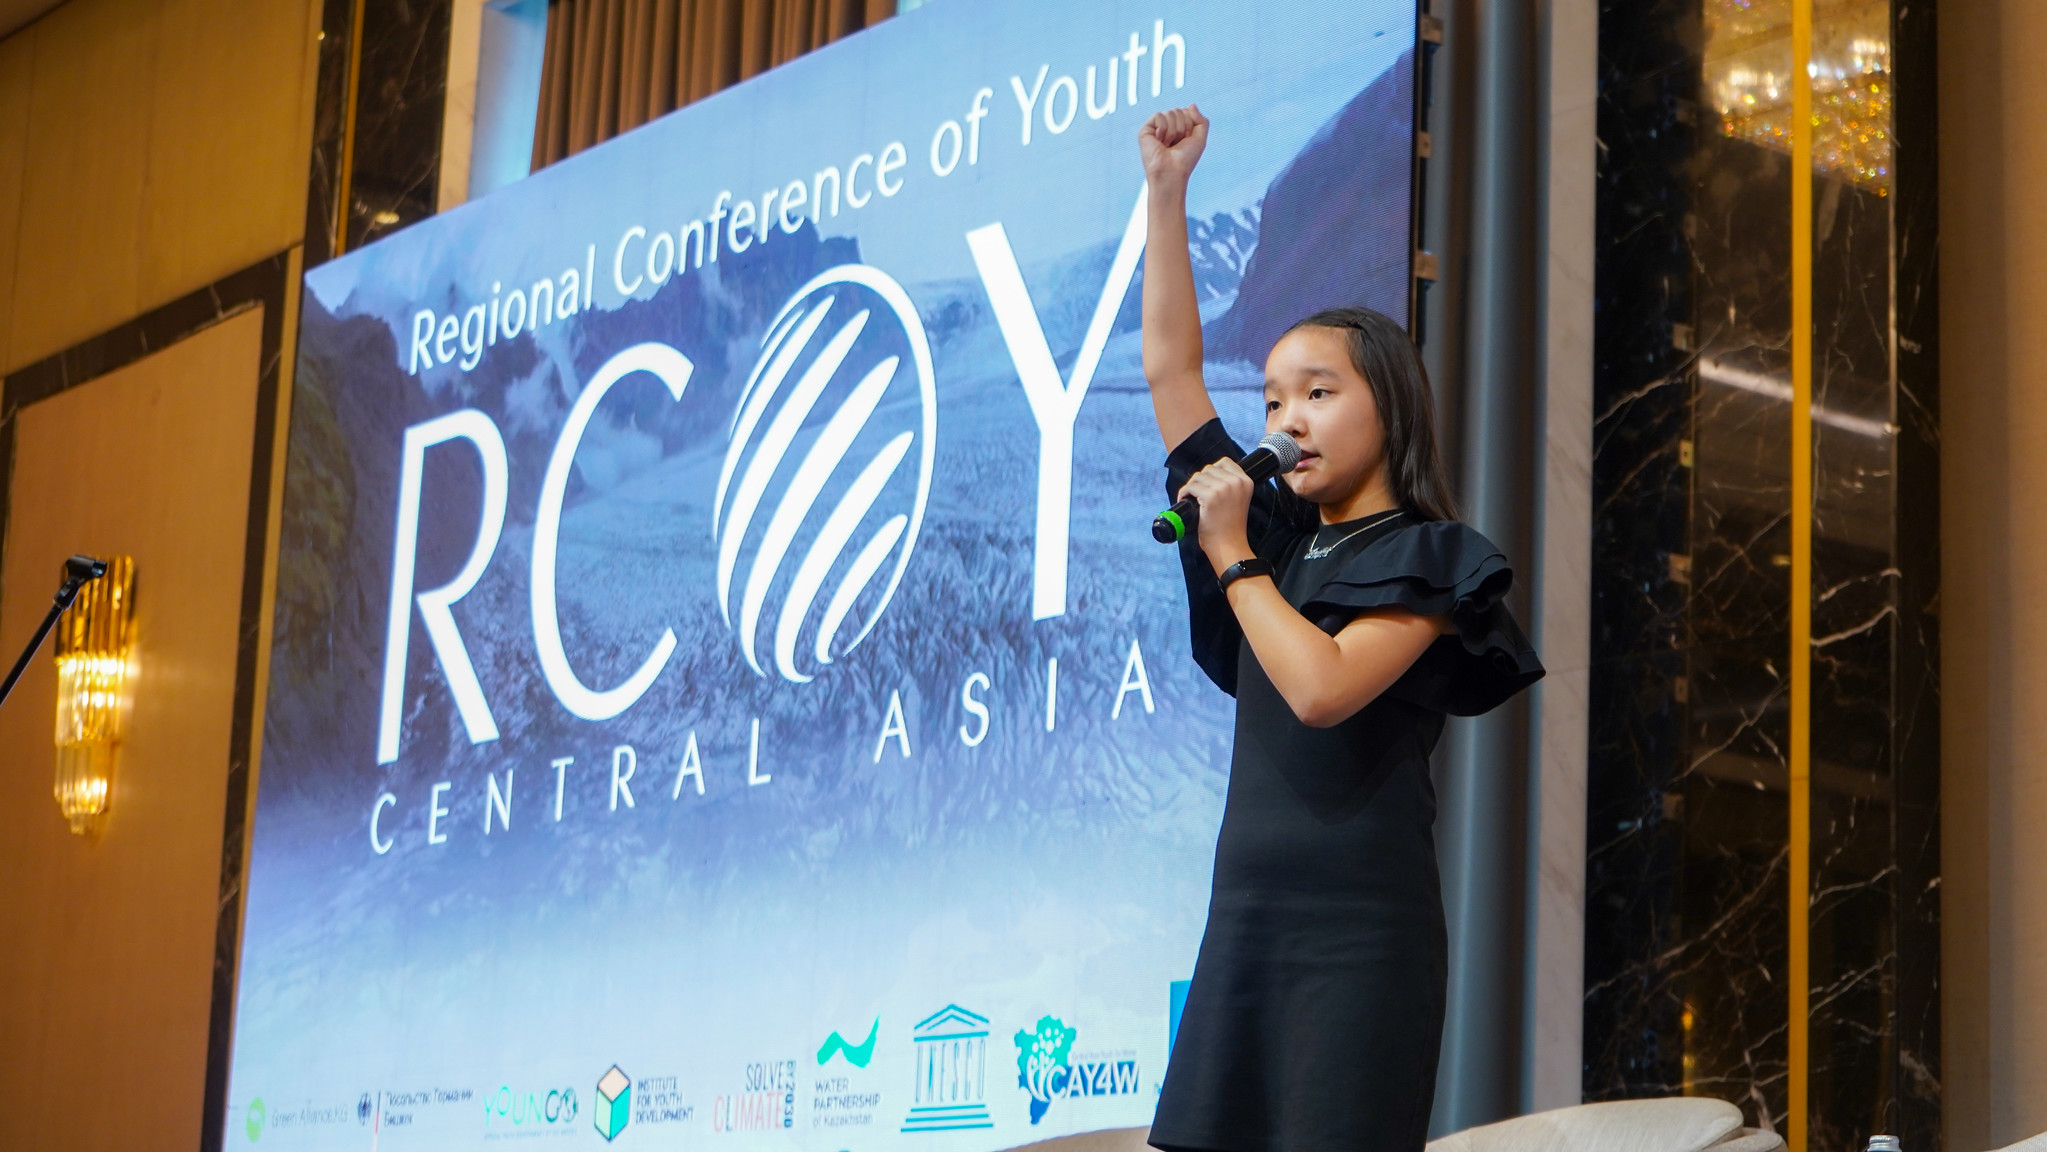 Молодёжь Центральной Азии объединяет усилия в действиях по воде и климату на RCOY Central Asia